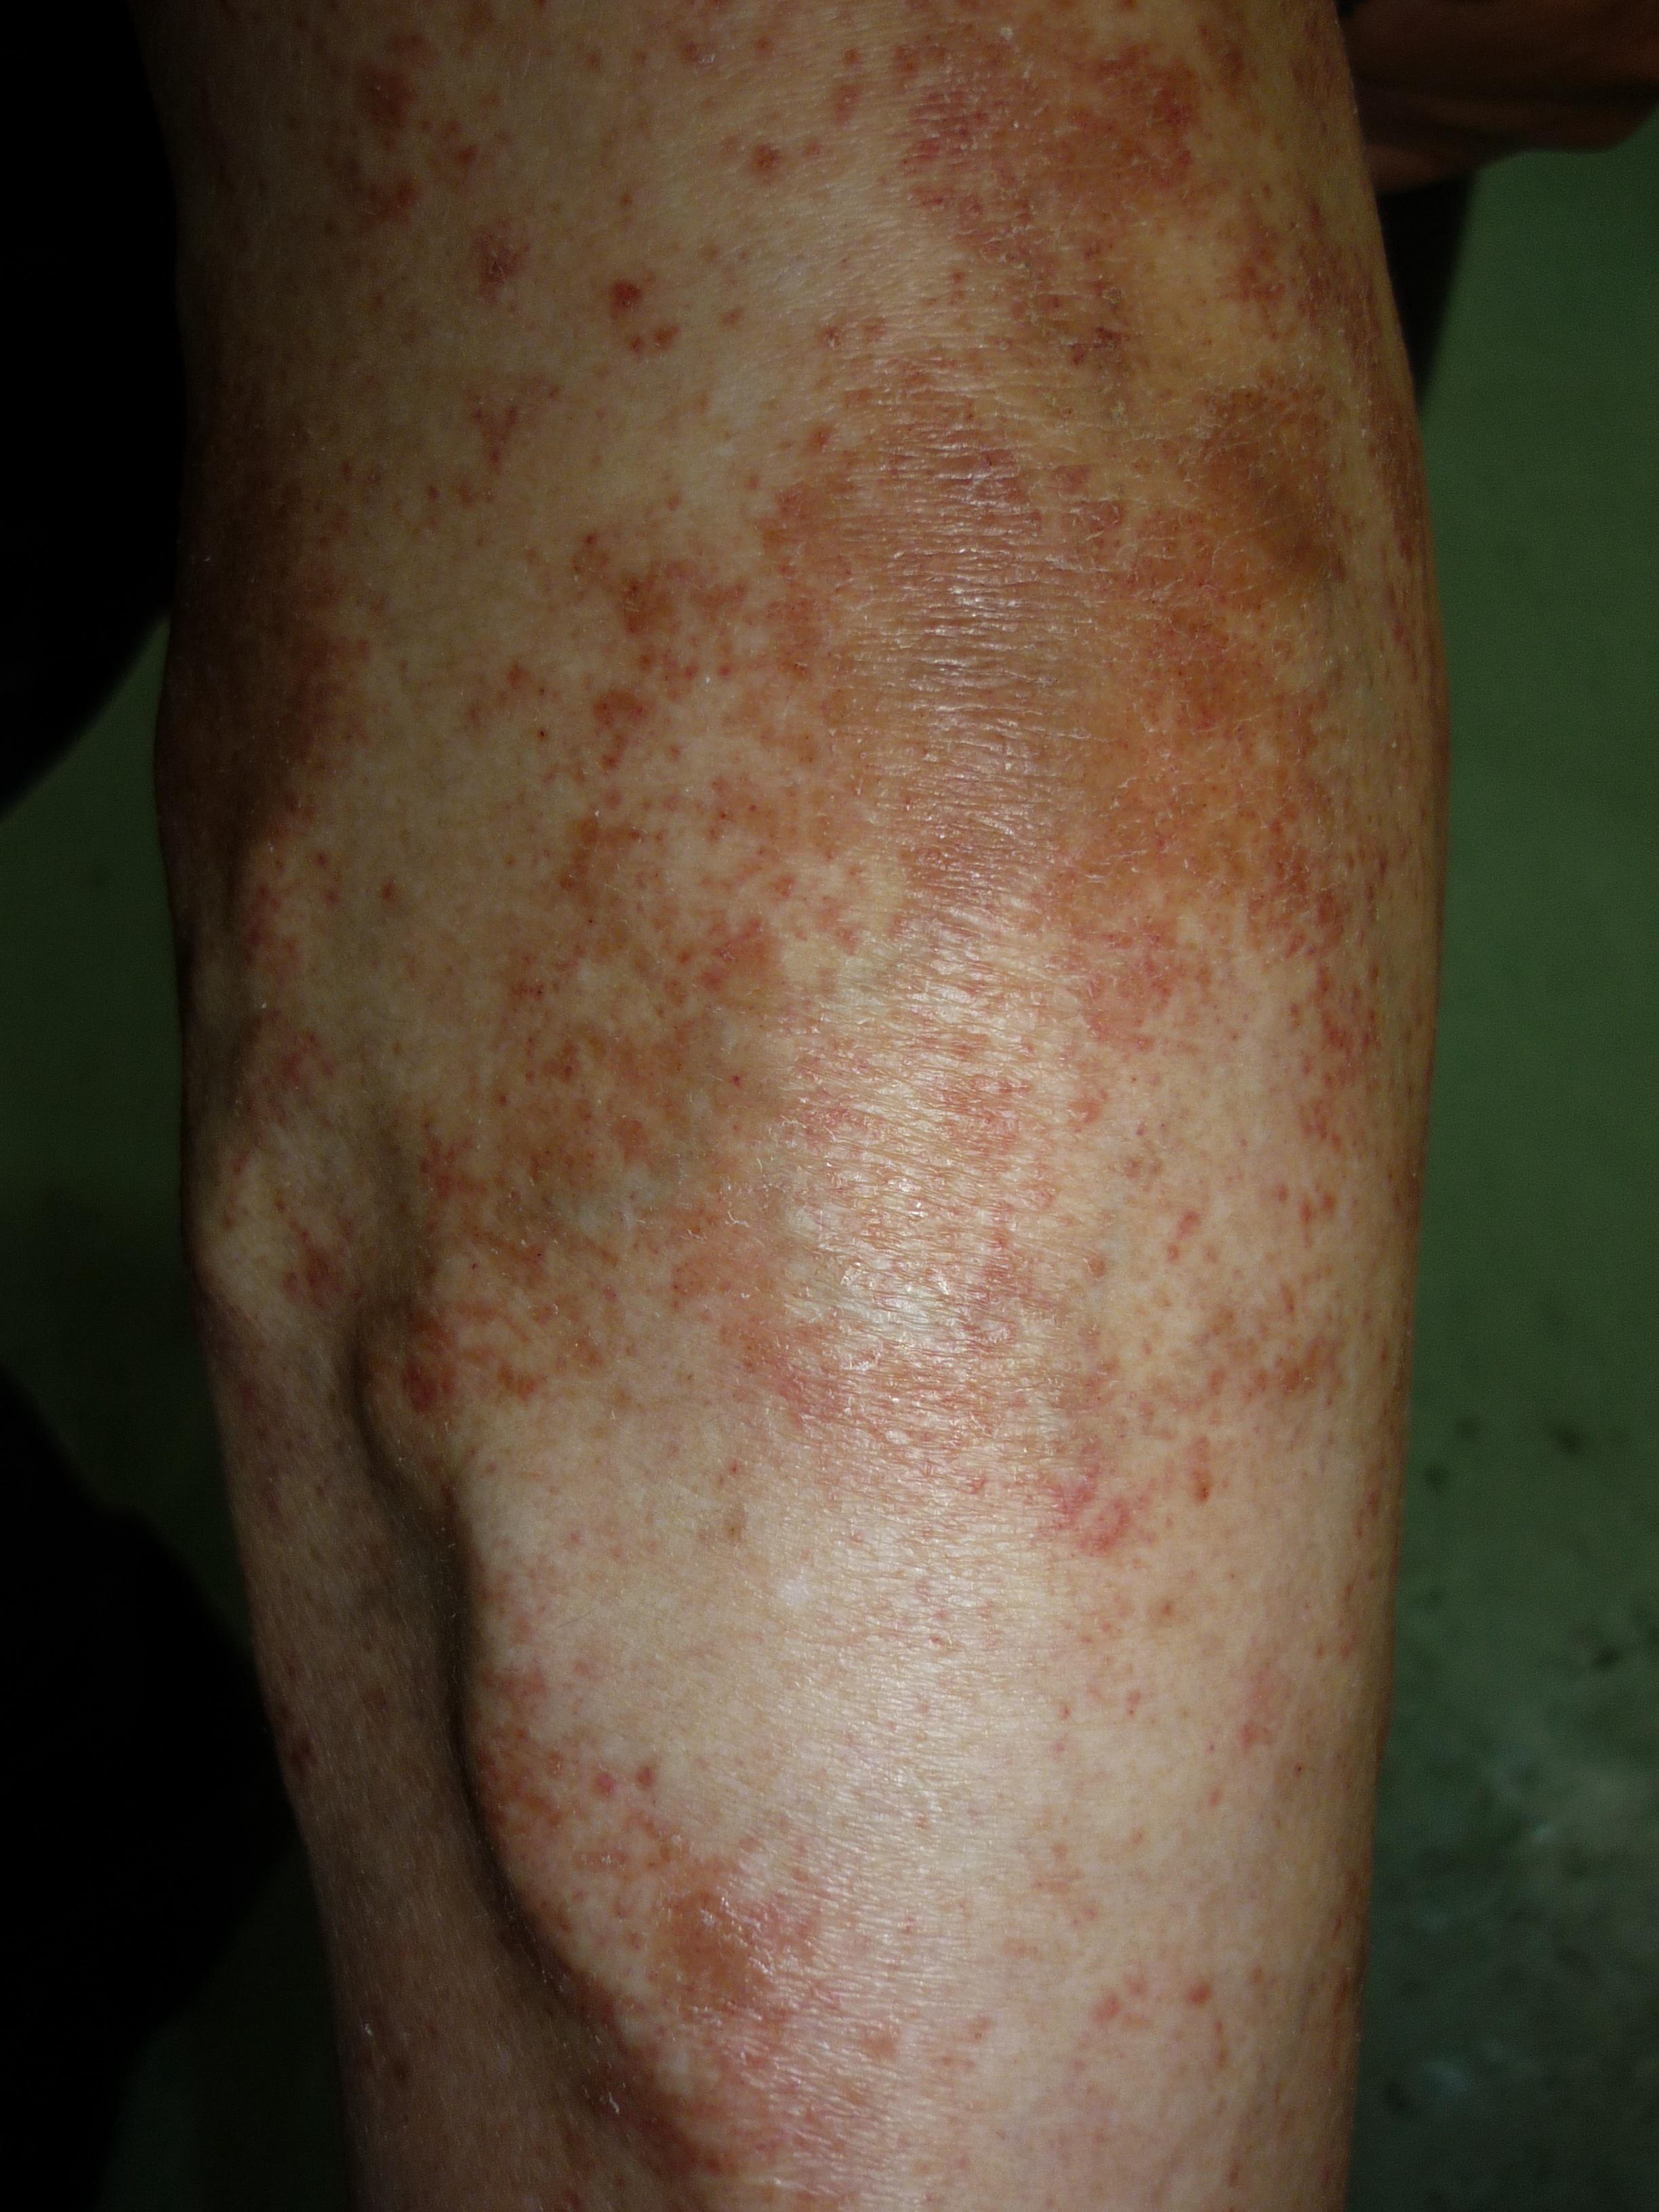 梅毒小腿症状图片图片